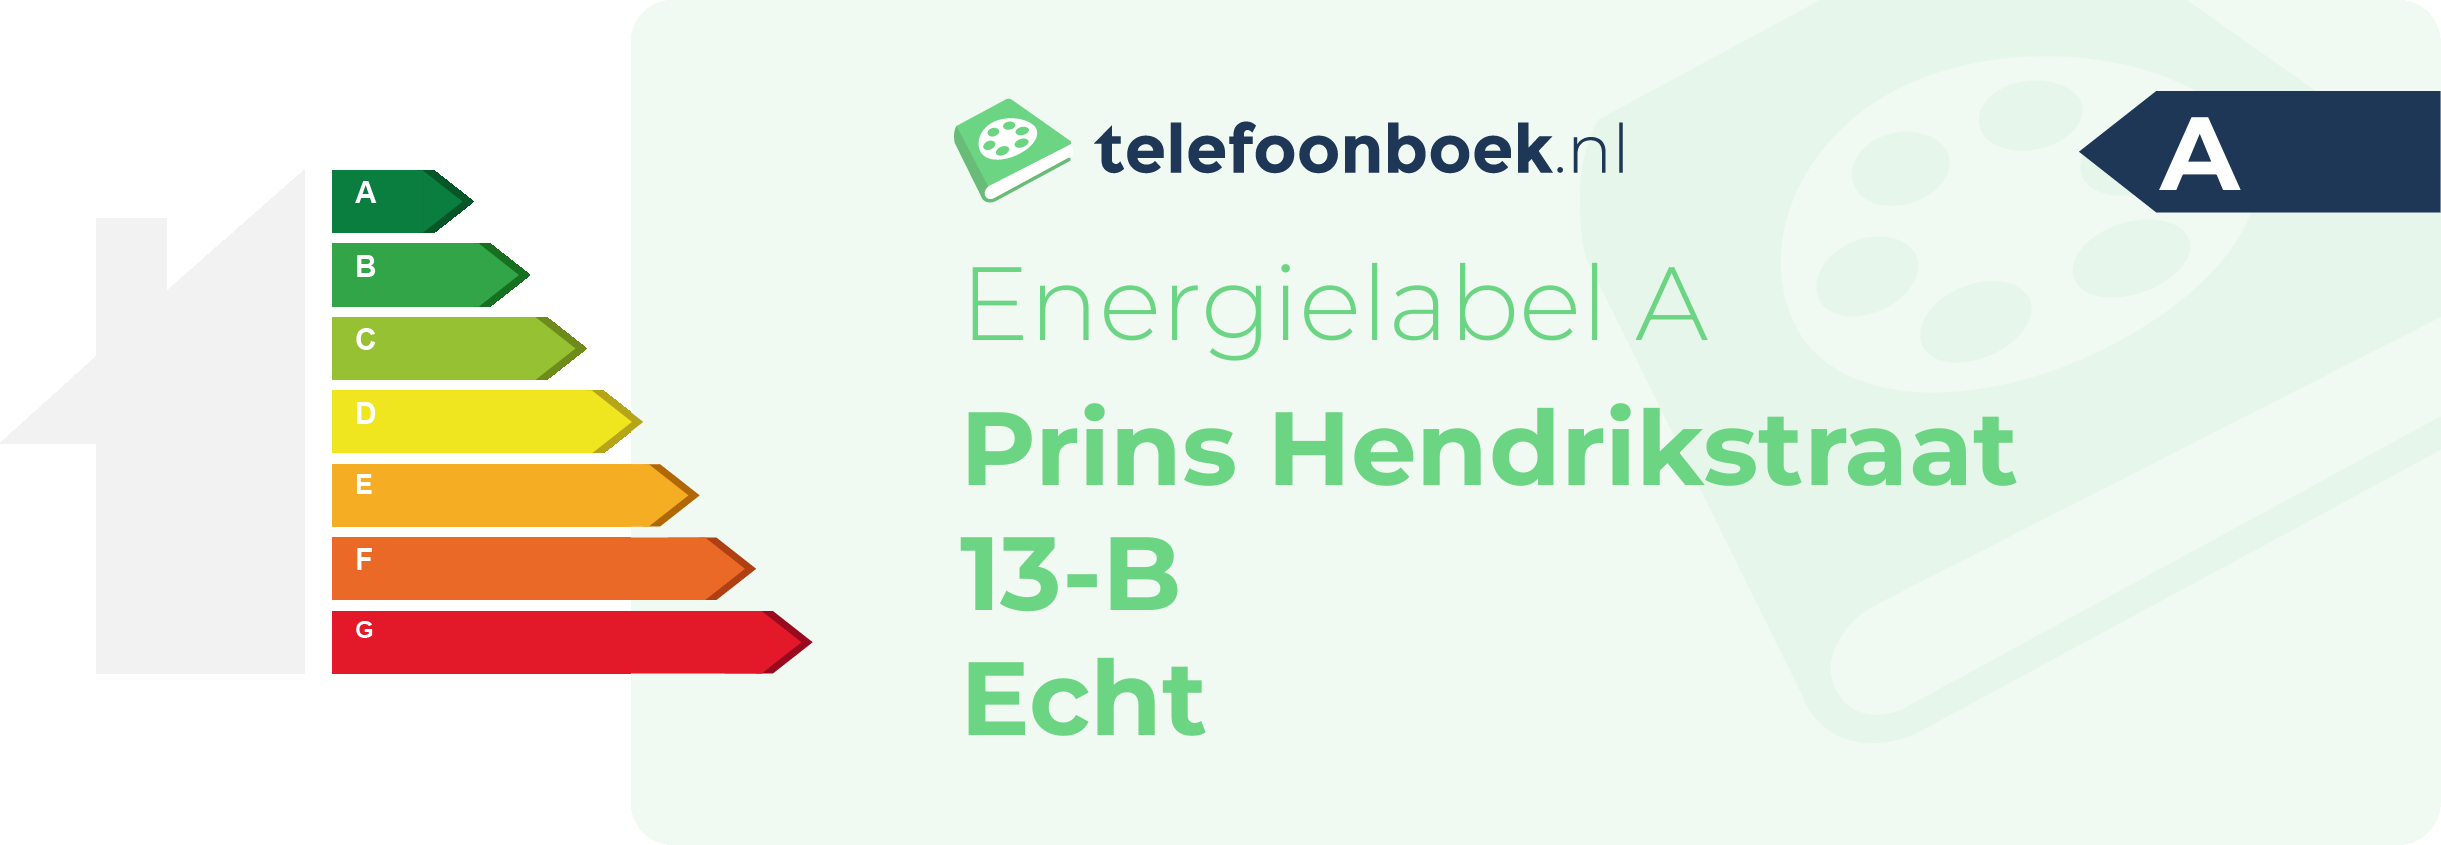 Energielabel Prins Hendrikstraat 13-B Echt